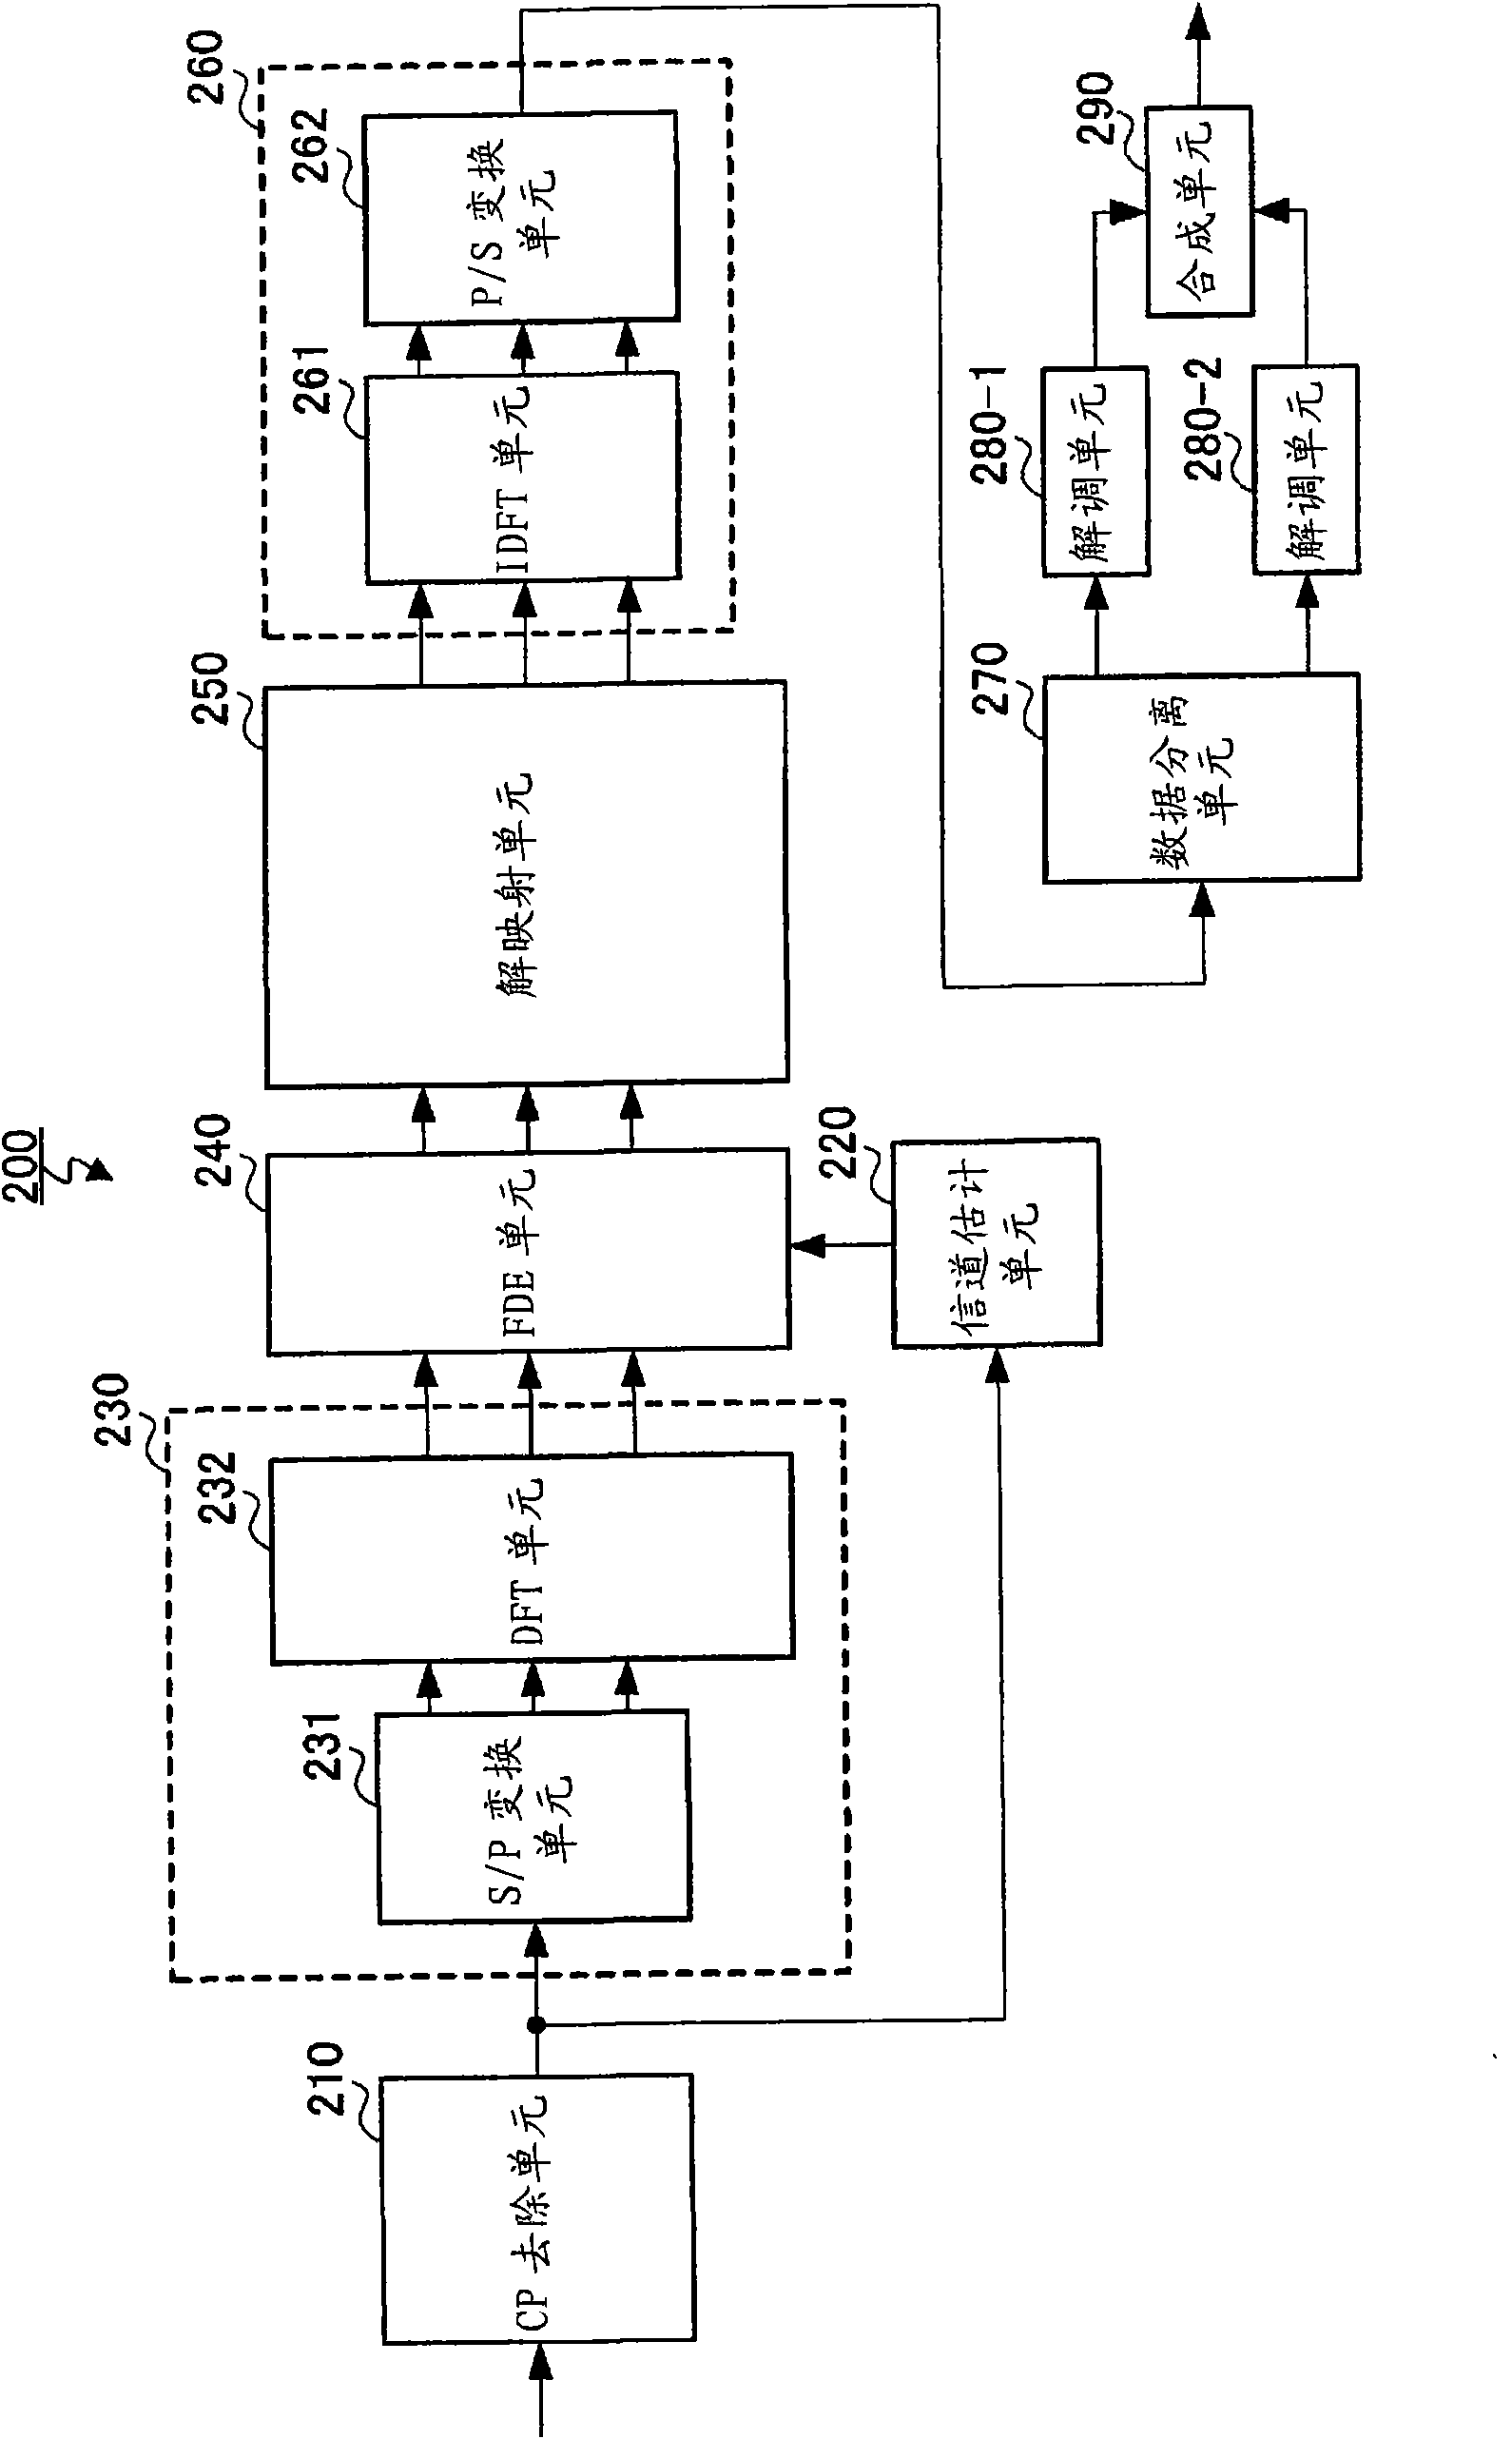 Transmitter, transmitting method, receiver, and receiving method